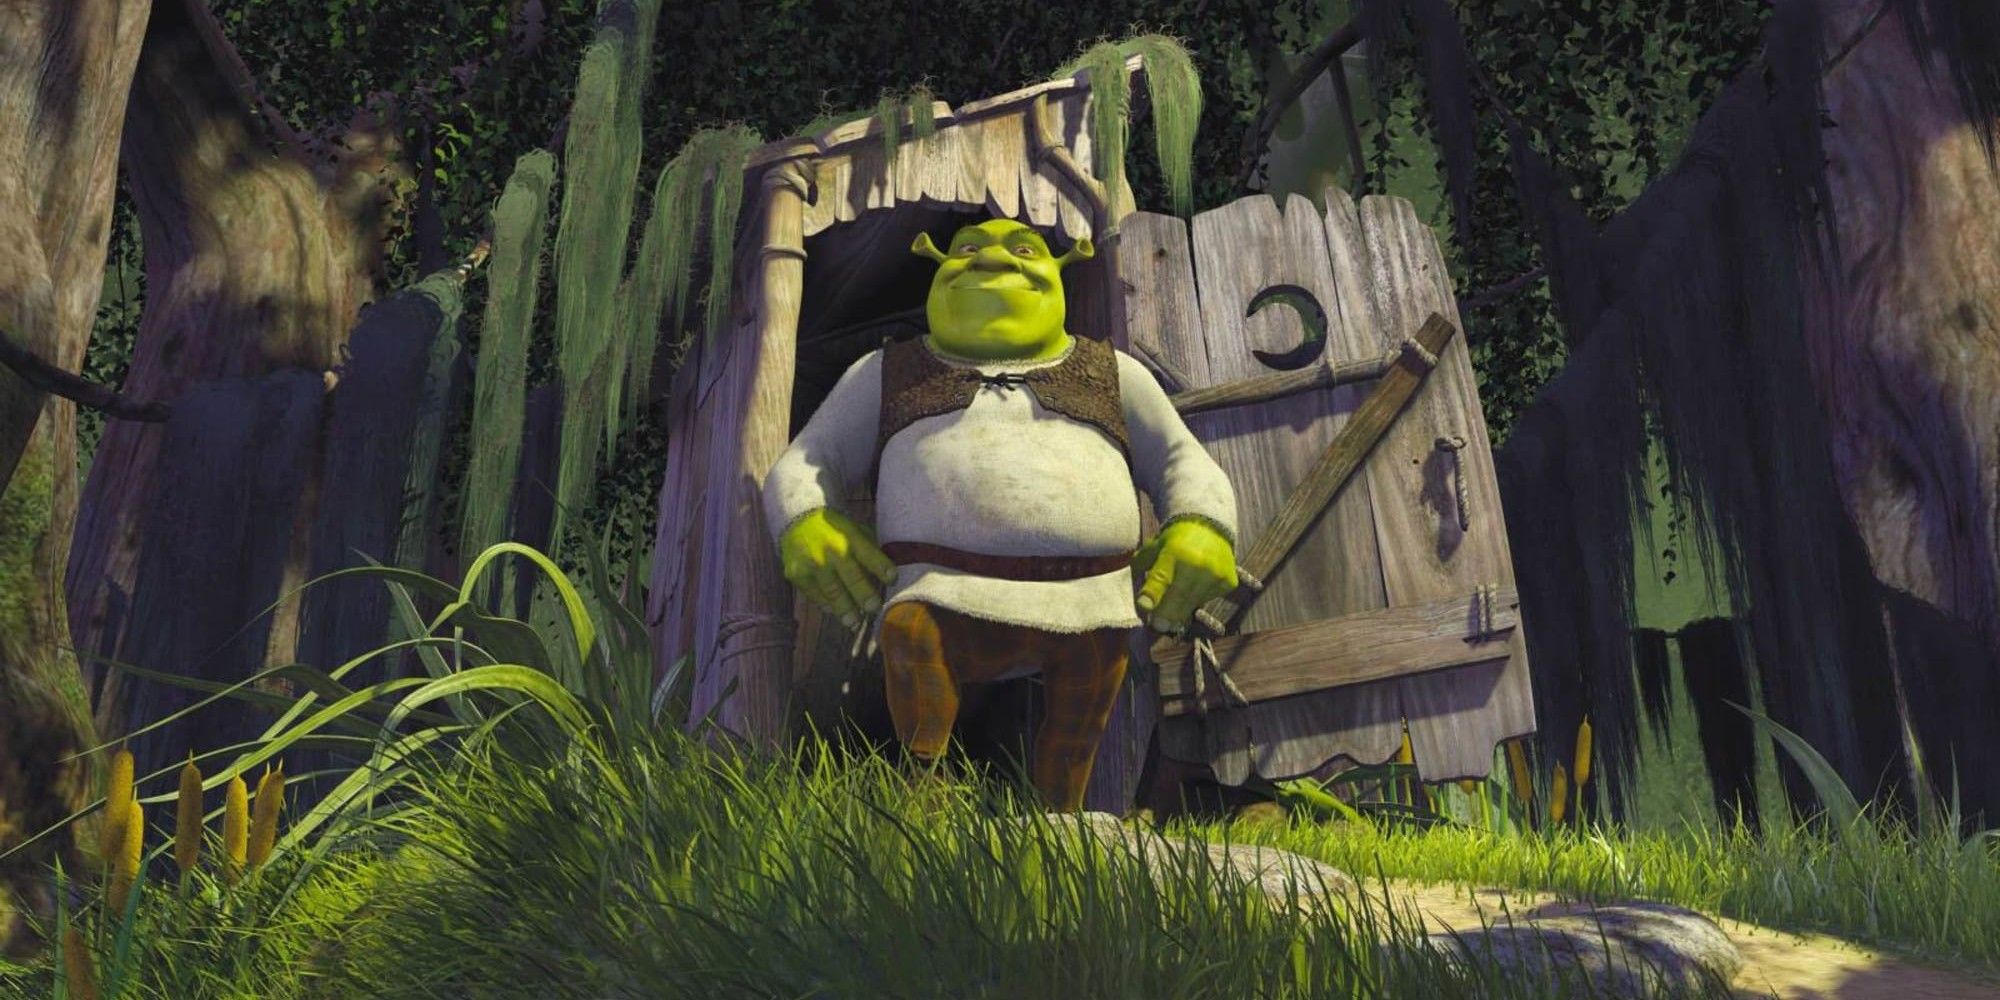 Shrek explodes from outside his house in Shrek